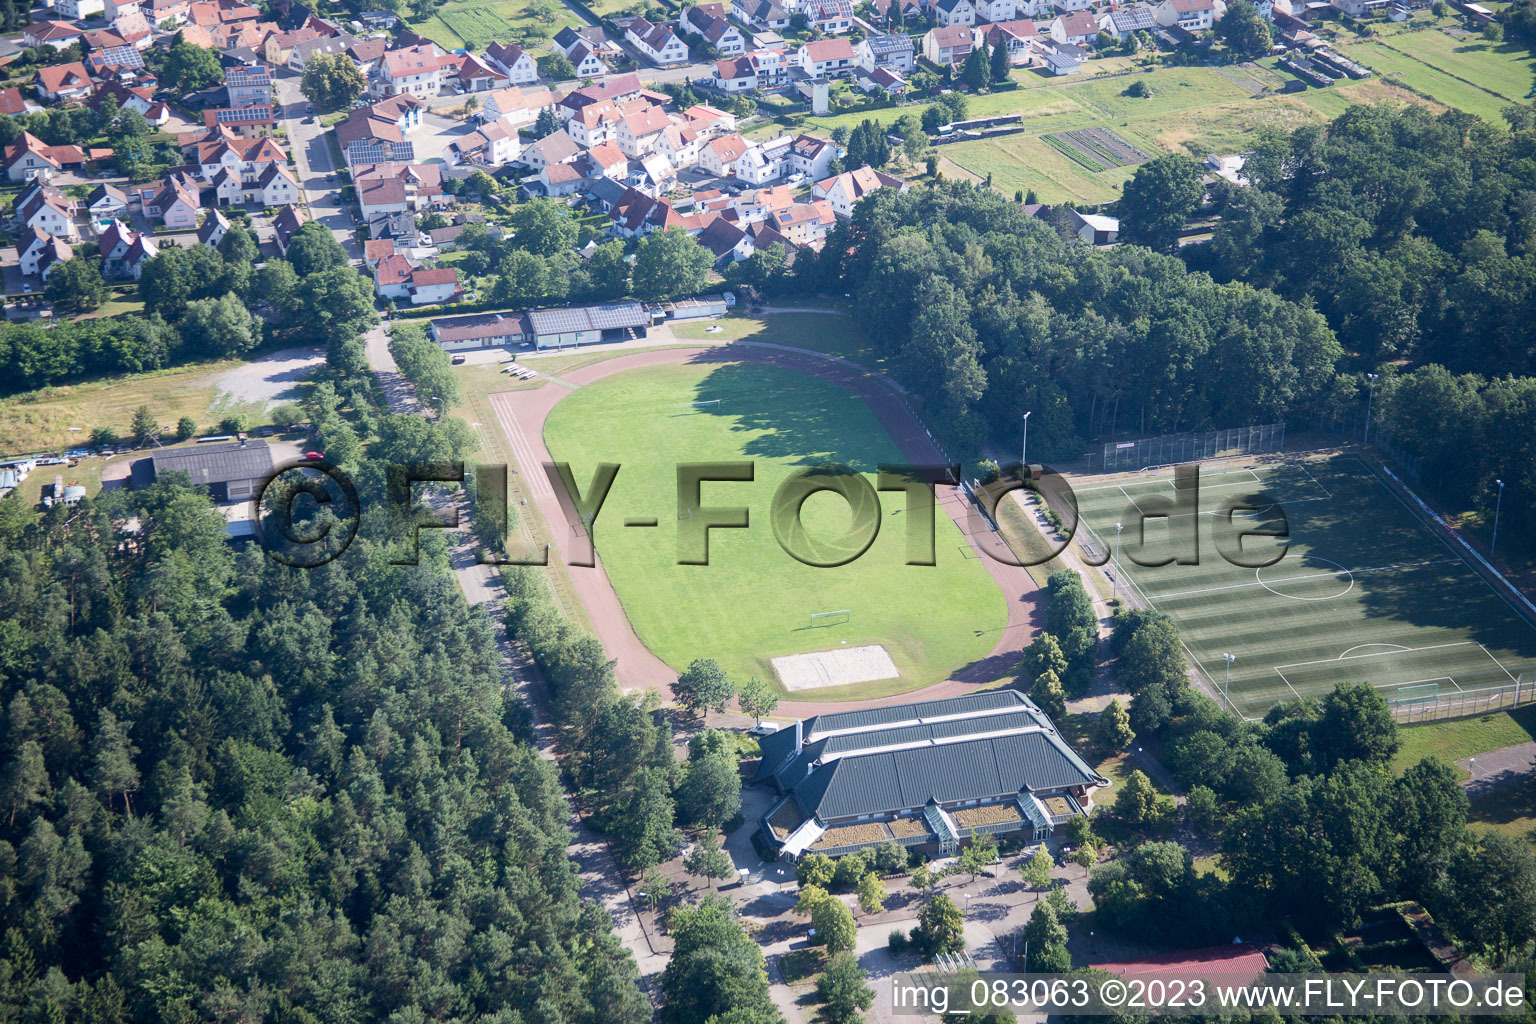 Ortsteil Schaidt in Wörth am Rhein im Bundesland Rheinland-Pfalz, Deutschland von der Drohne aus gesehen